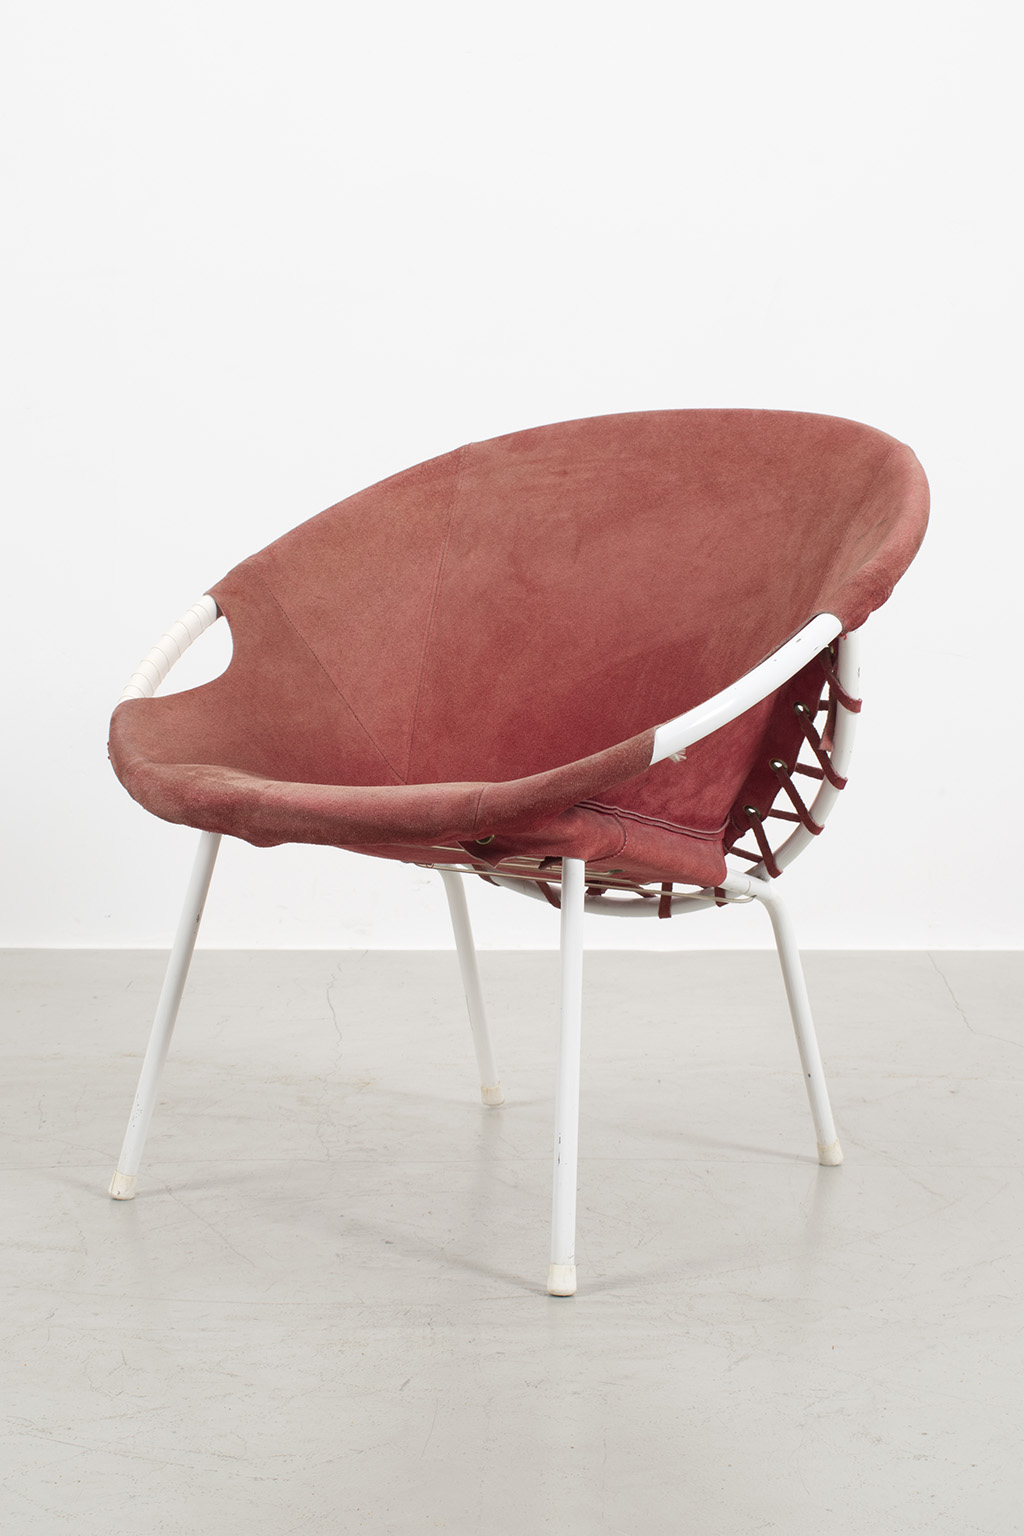 Hoop armchair in coral red suede